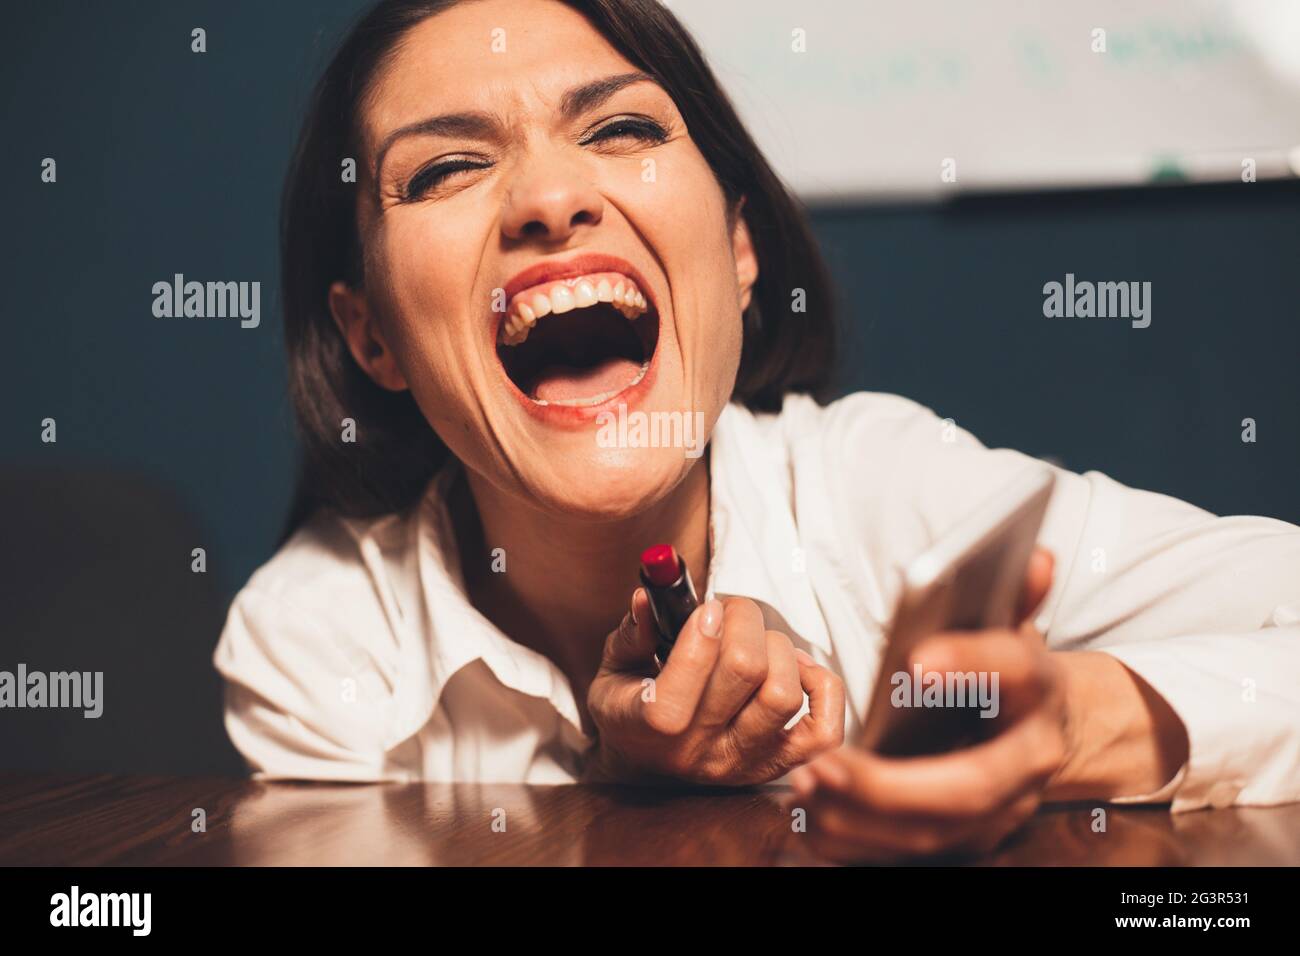 Junge verrückte Geschäftsfrau lacht Make-up mit rotem Lippenstift am Arbeitsplatz. Getöntes Bild Stockfoto